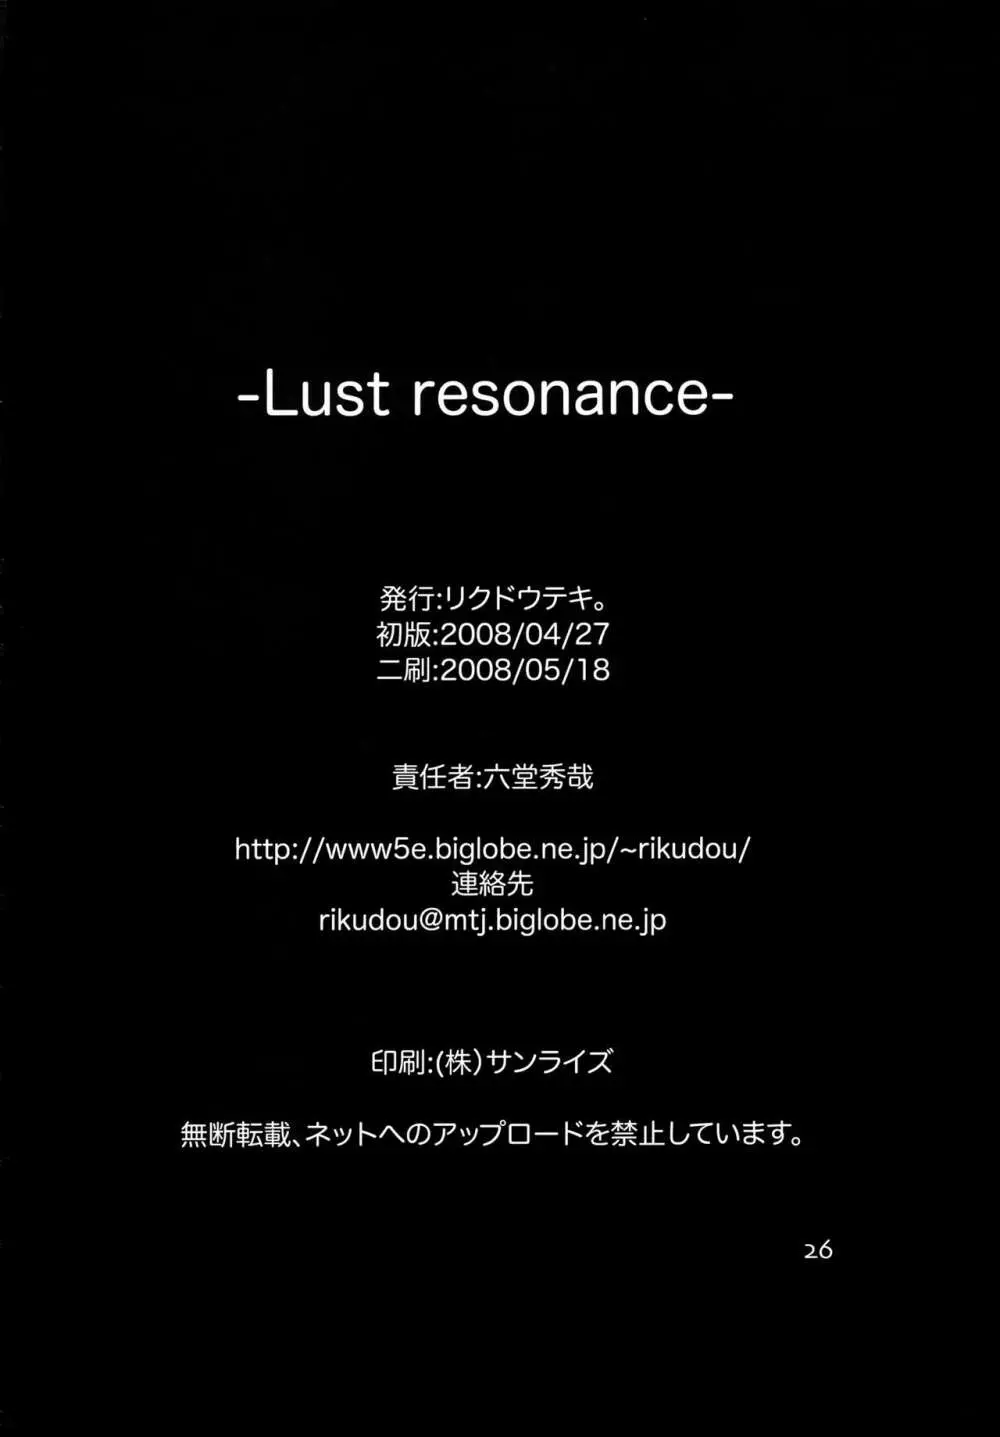 Lust resonance 25ページ